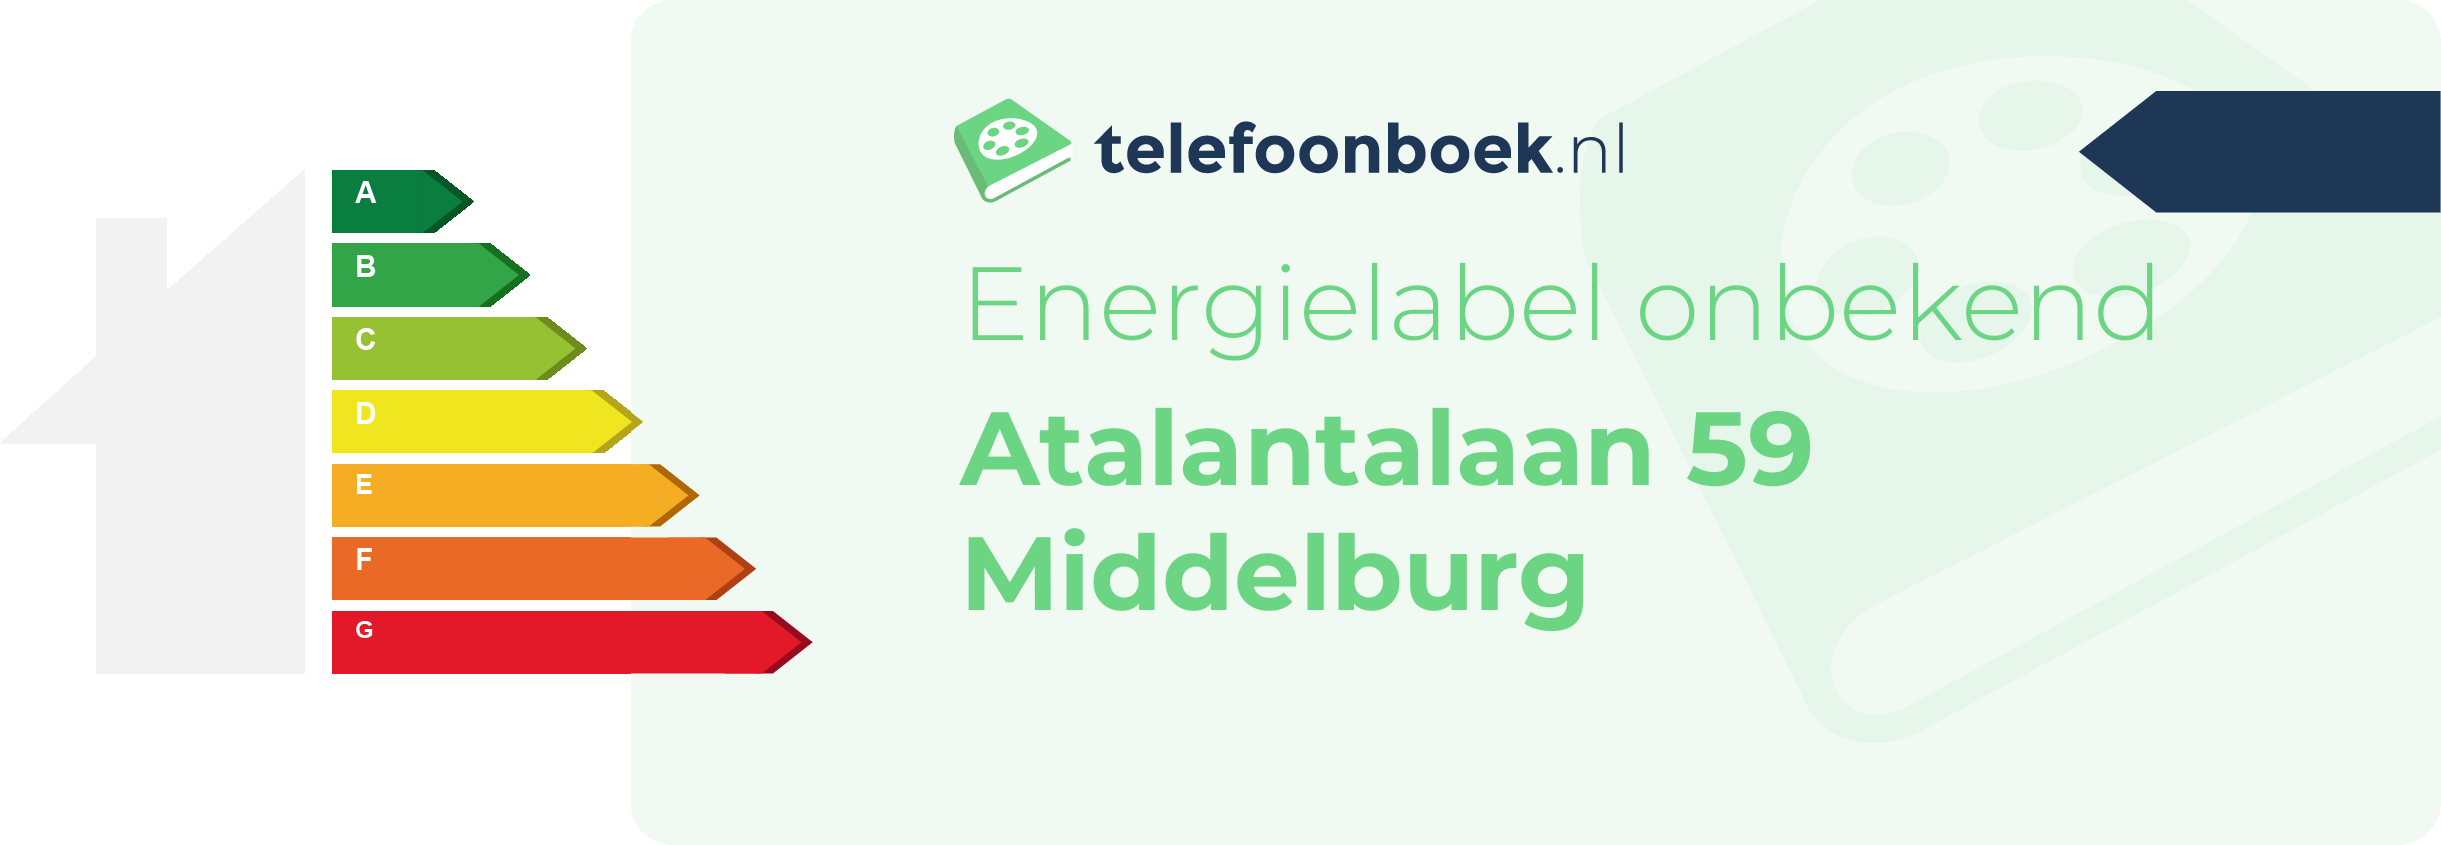 Energielabel Atalantalaan 59 Middelburg